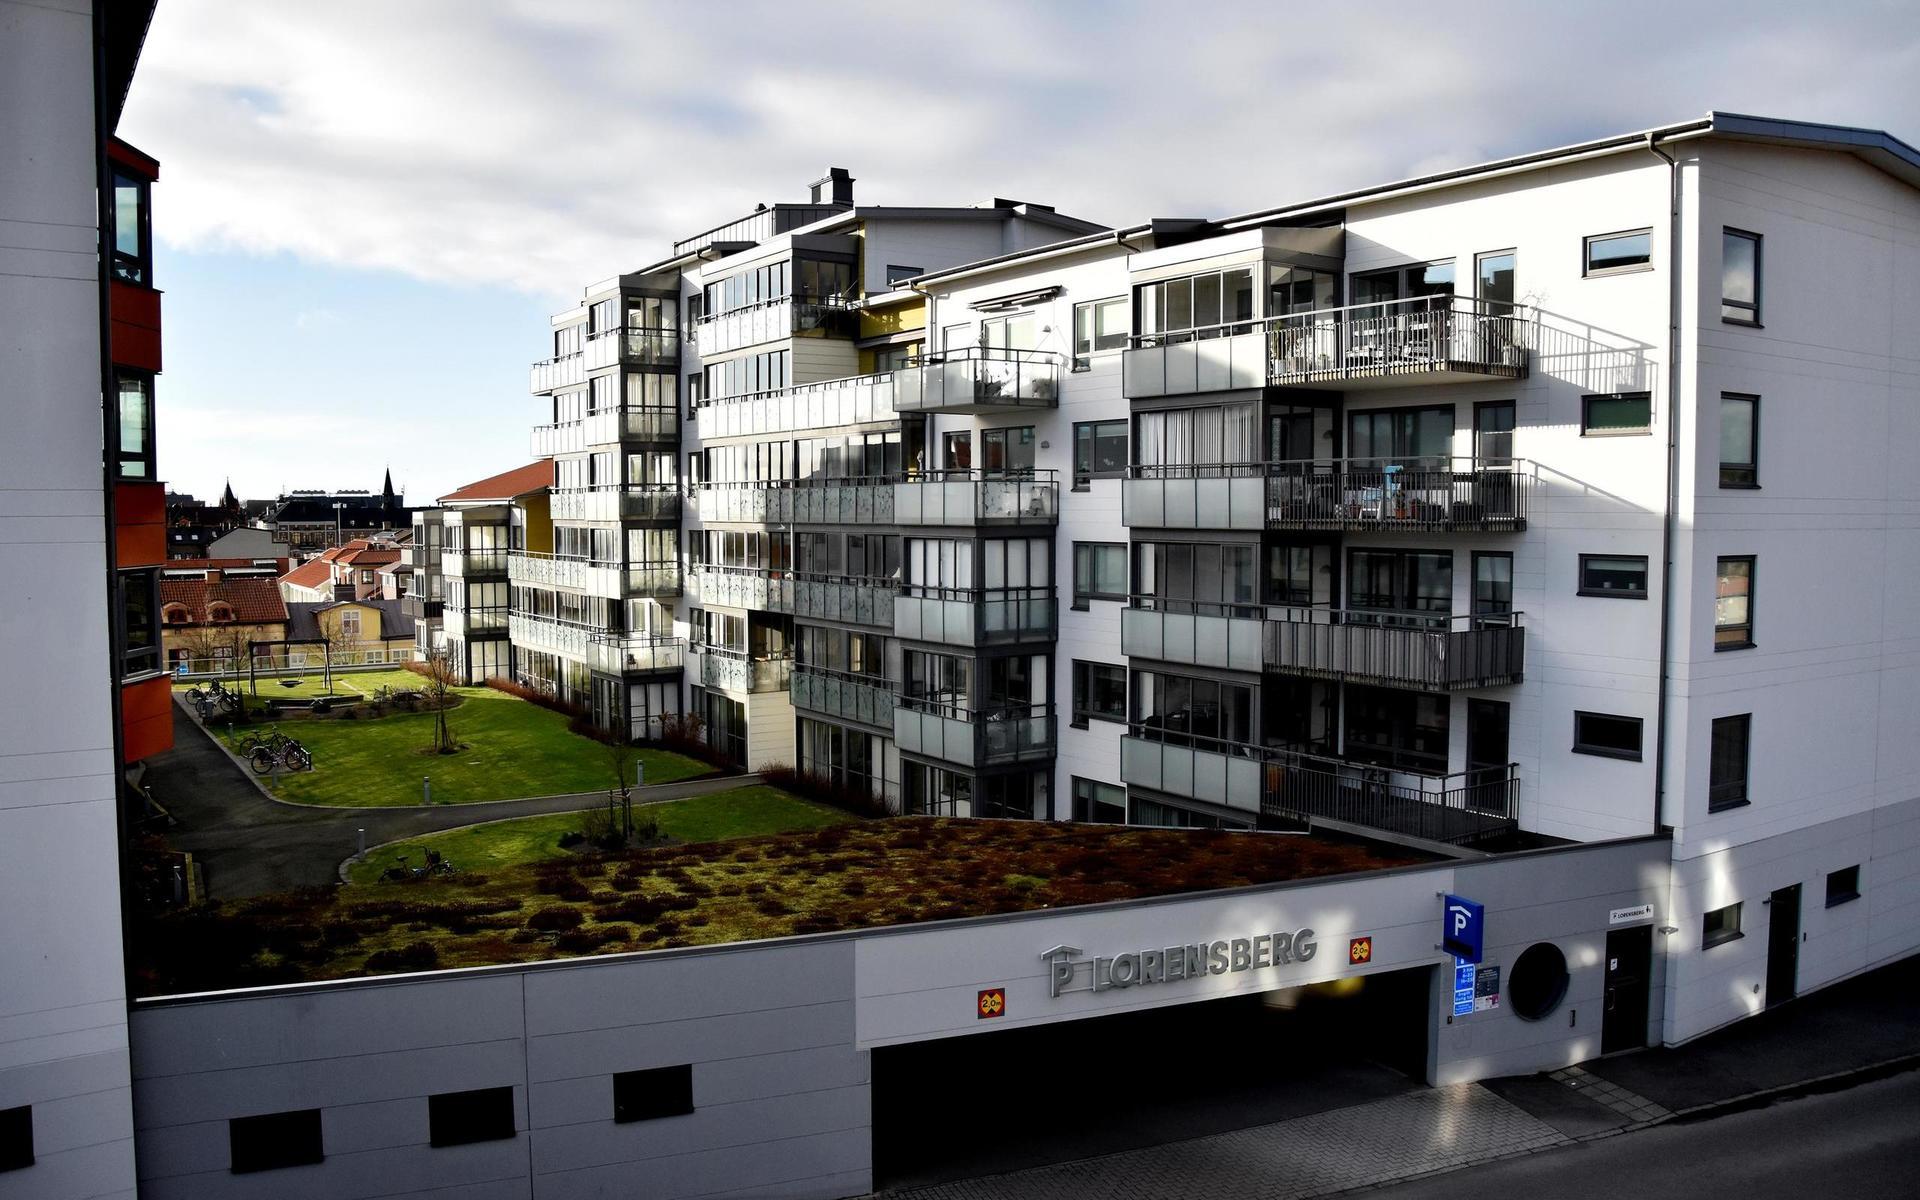 2012. De första lägenheterna i kvarteret Lorensberg var klara för inflyttning 2012. När kvarteret stod helt klart 2014 hade den tidigare parkeringsplatsen omvandlats till 160 bostadsrättslägenheter. Projektet kom till i samarbete mellan Järngrinden och Mjöbäck Entreprenad. Wästbygg byggde husen.